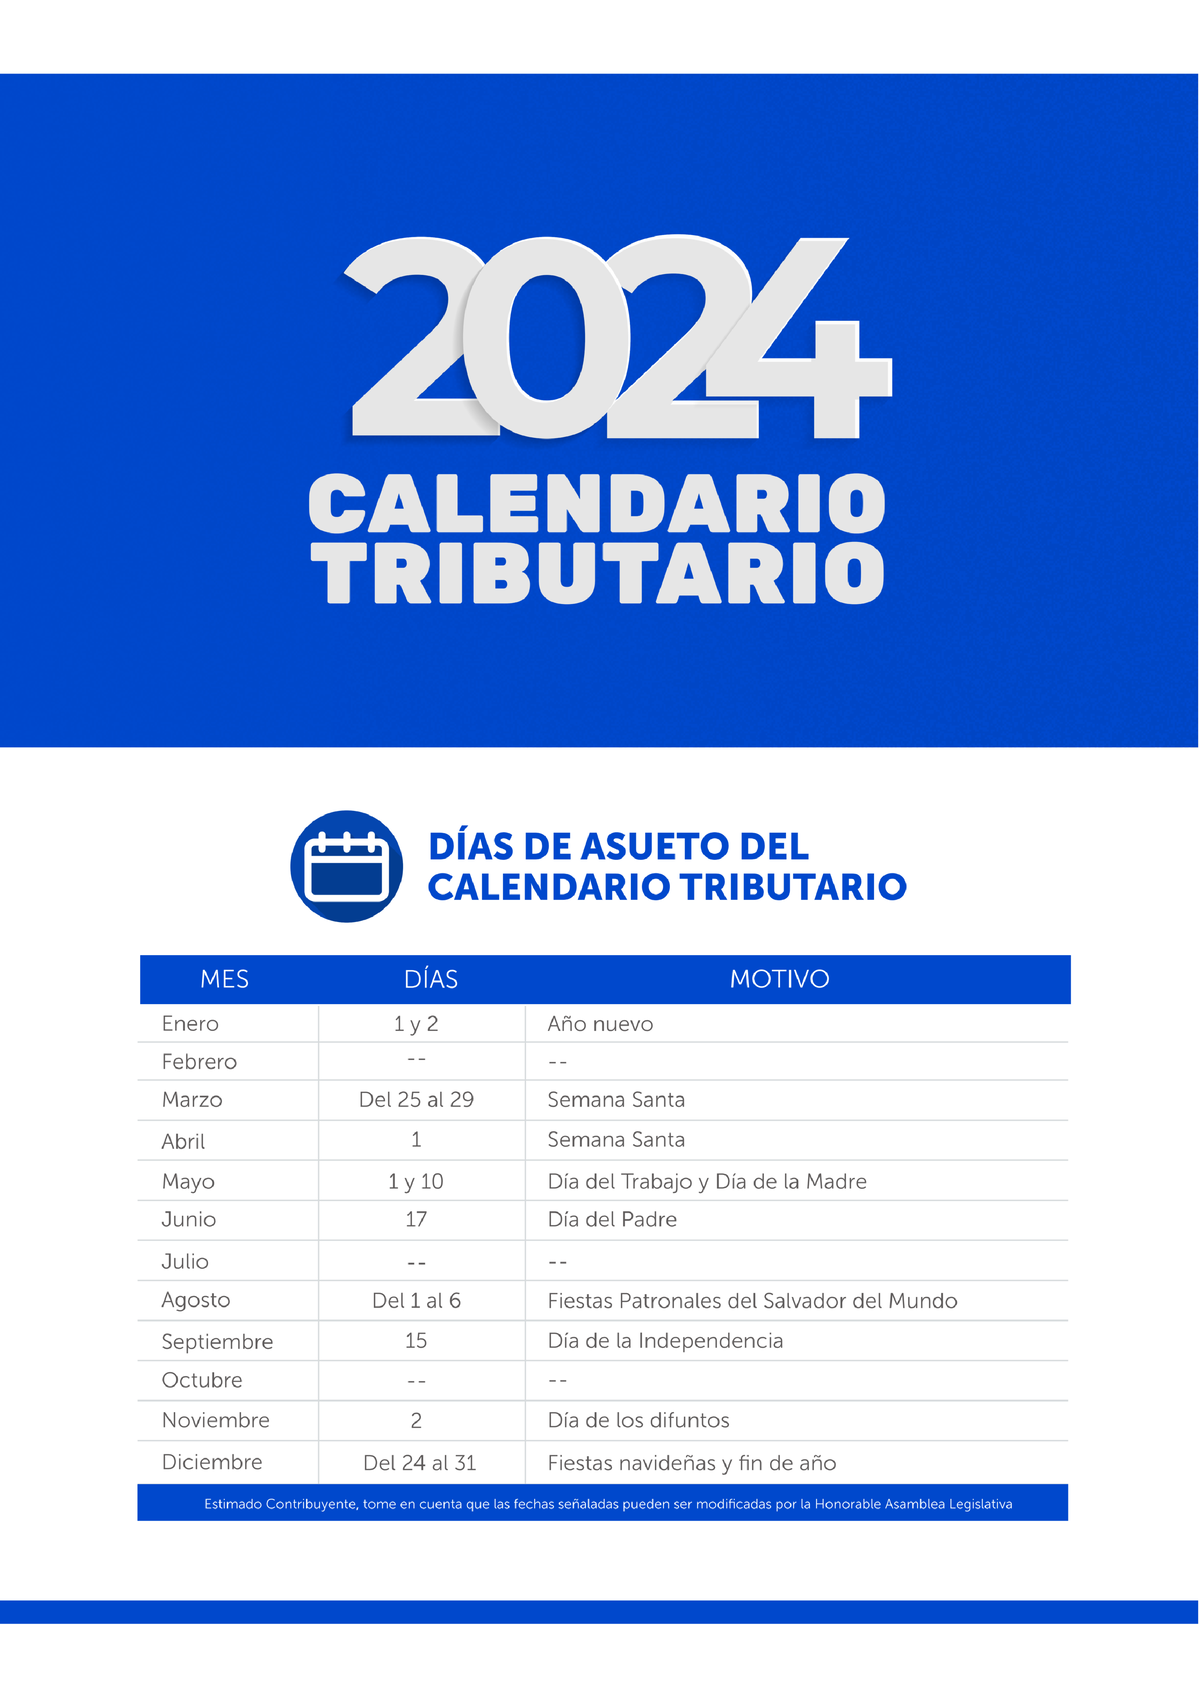 Calendario Tributario AÑO 2024 CONTABILIDAD GENERAL Studocu